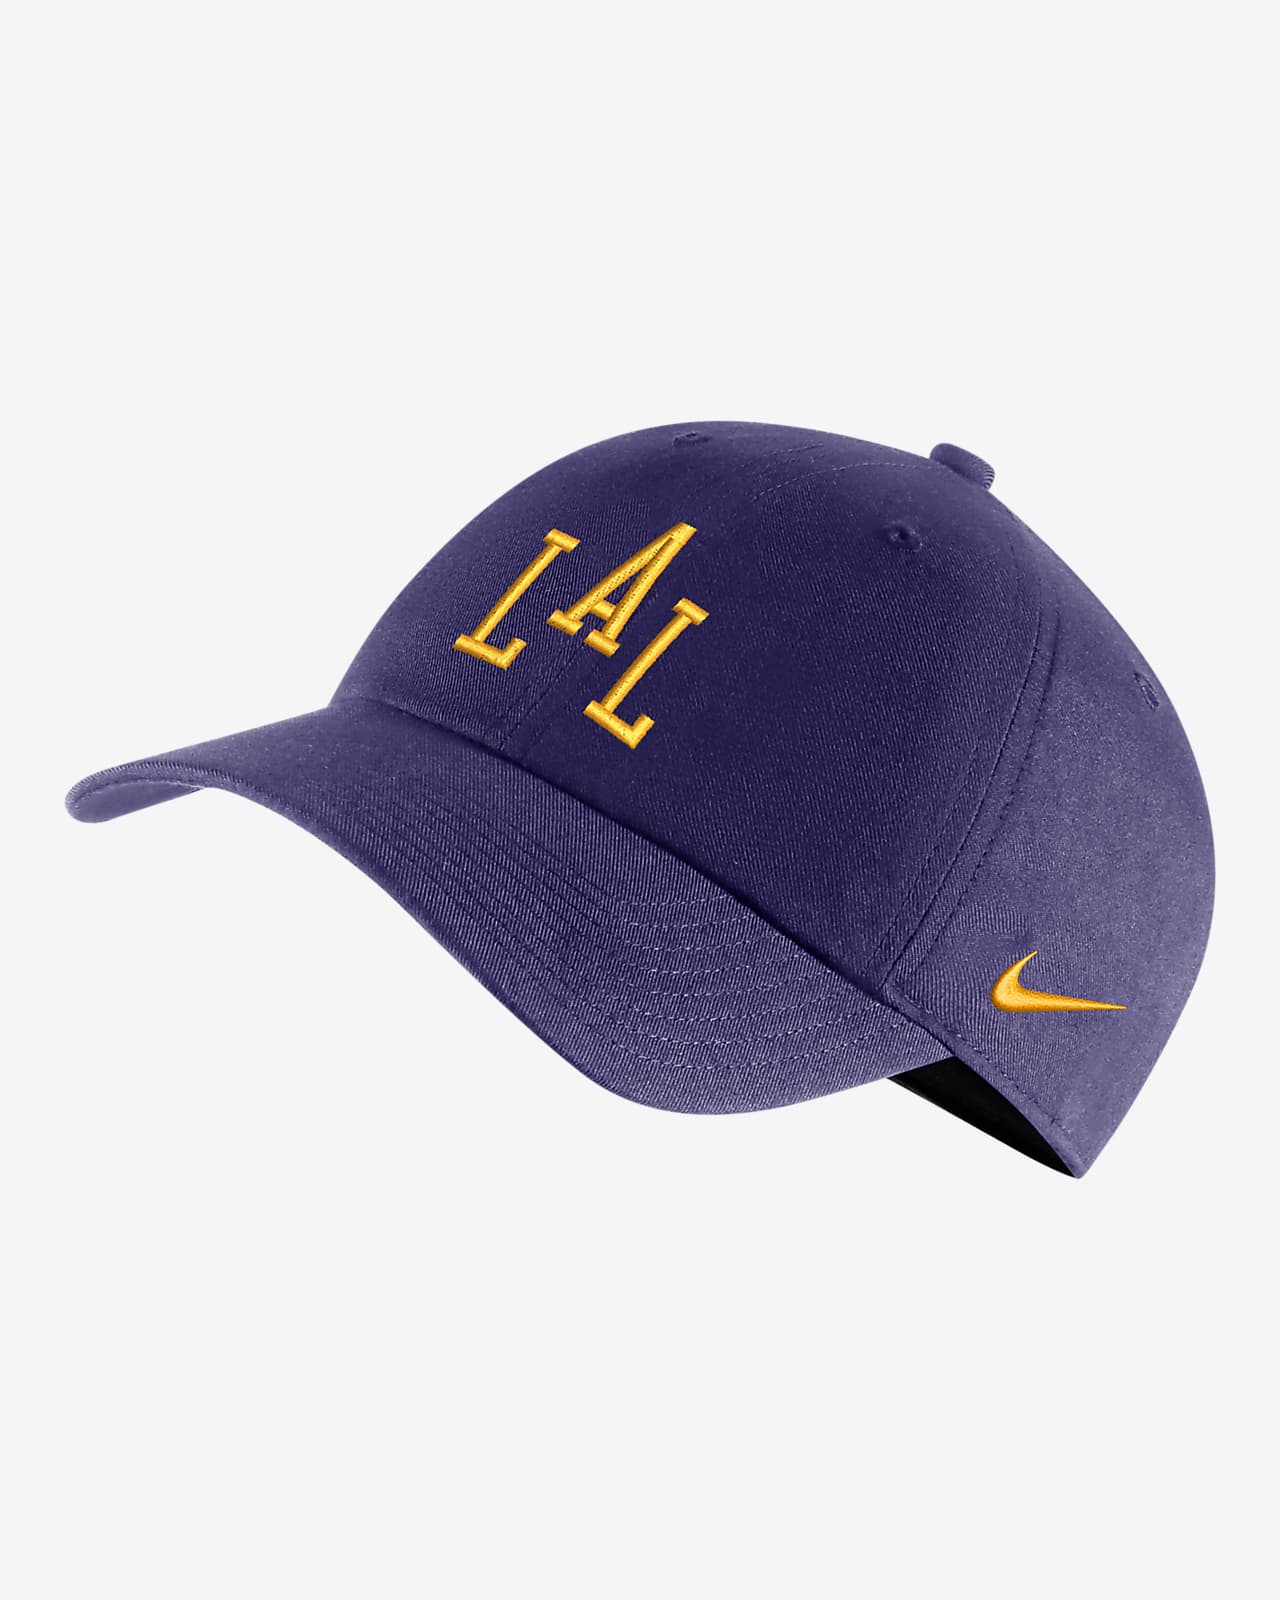 Gorra Nike de la NBA ajustable Los Angeles Lakers City Edition